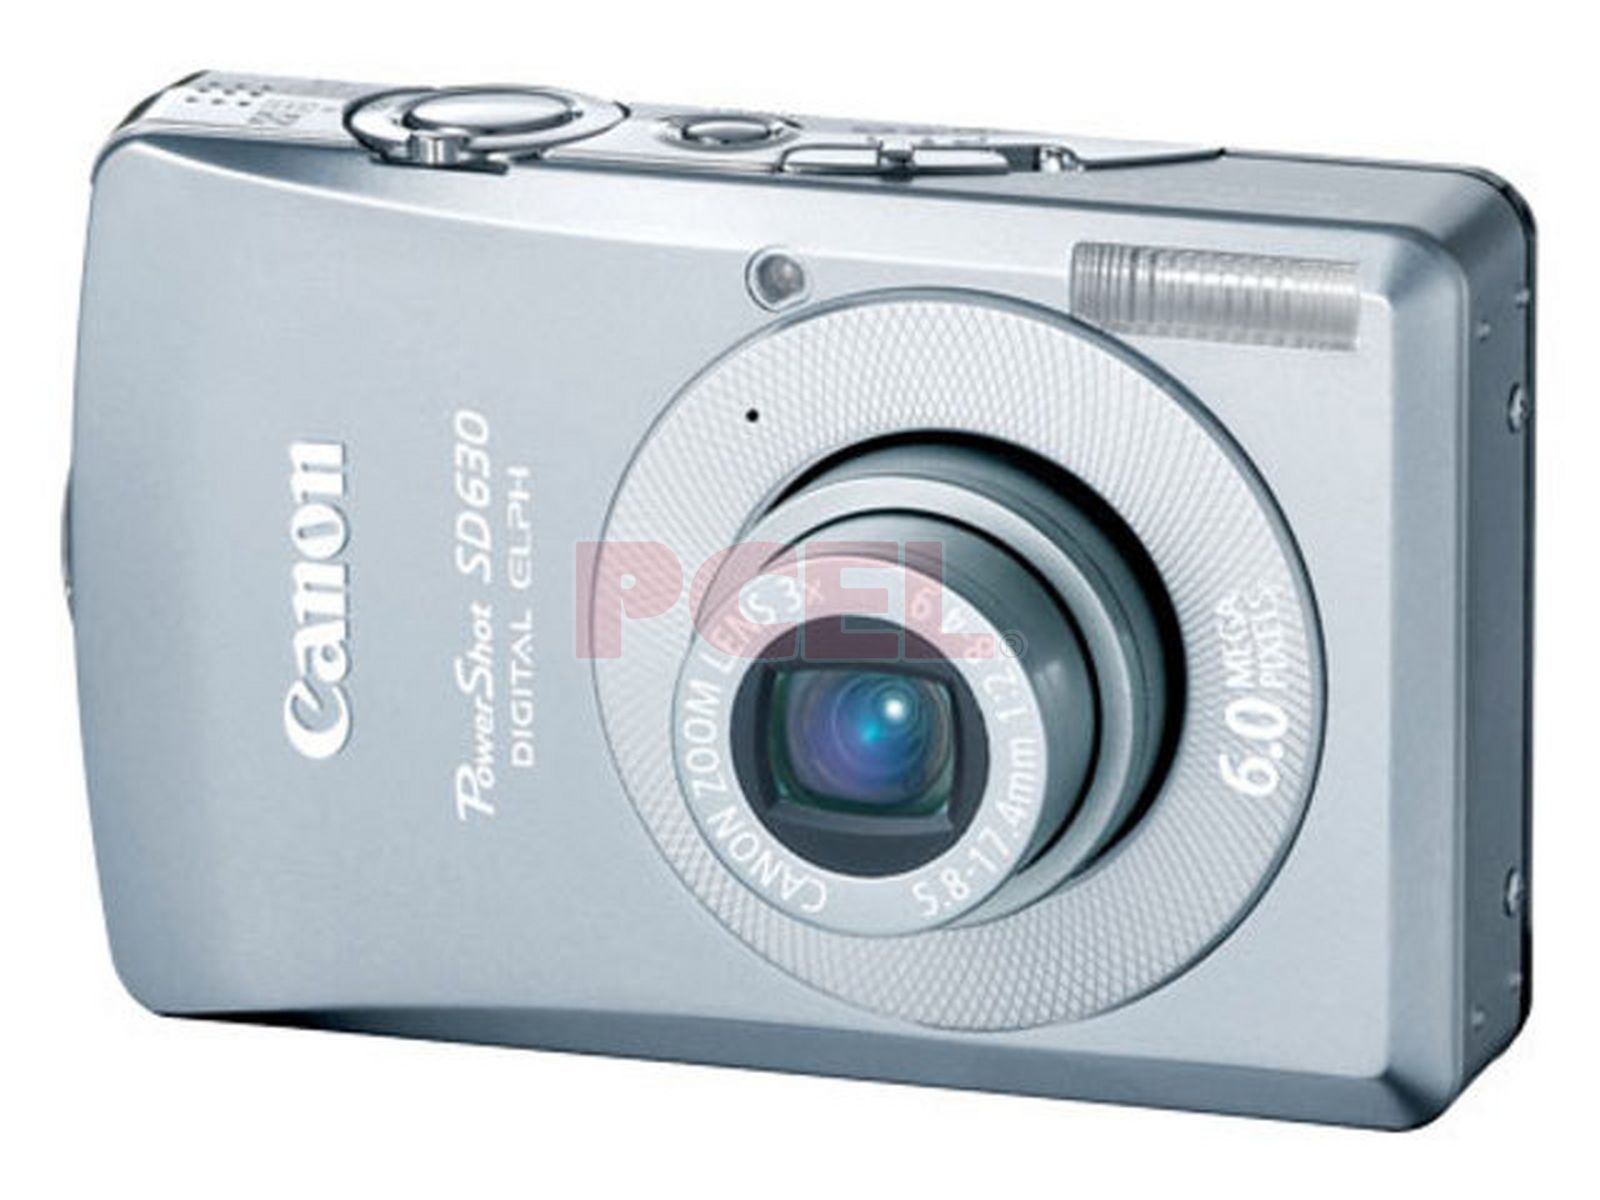 Canon PowerShot SD630 - Cámara digital Elph de 6MP con zoom óptico 3x  (Modelo antiguo)